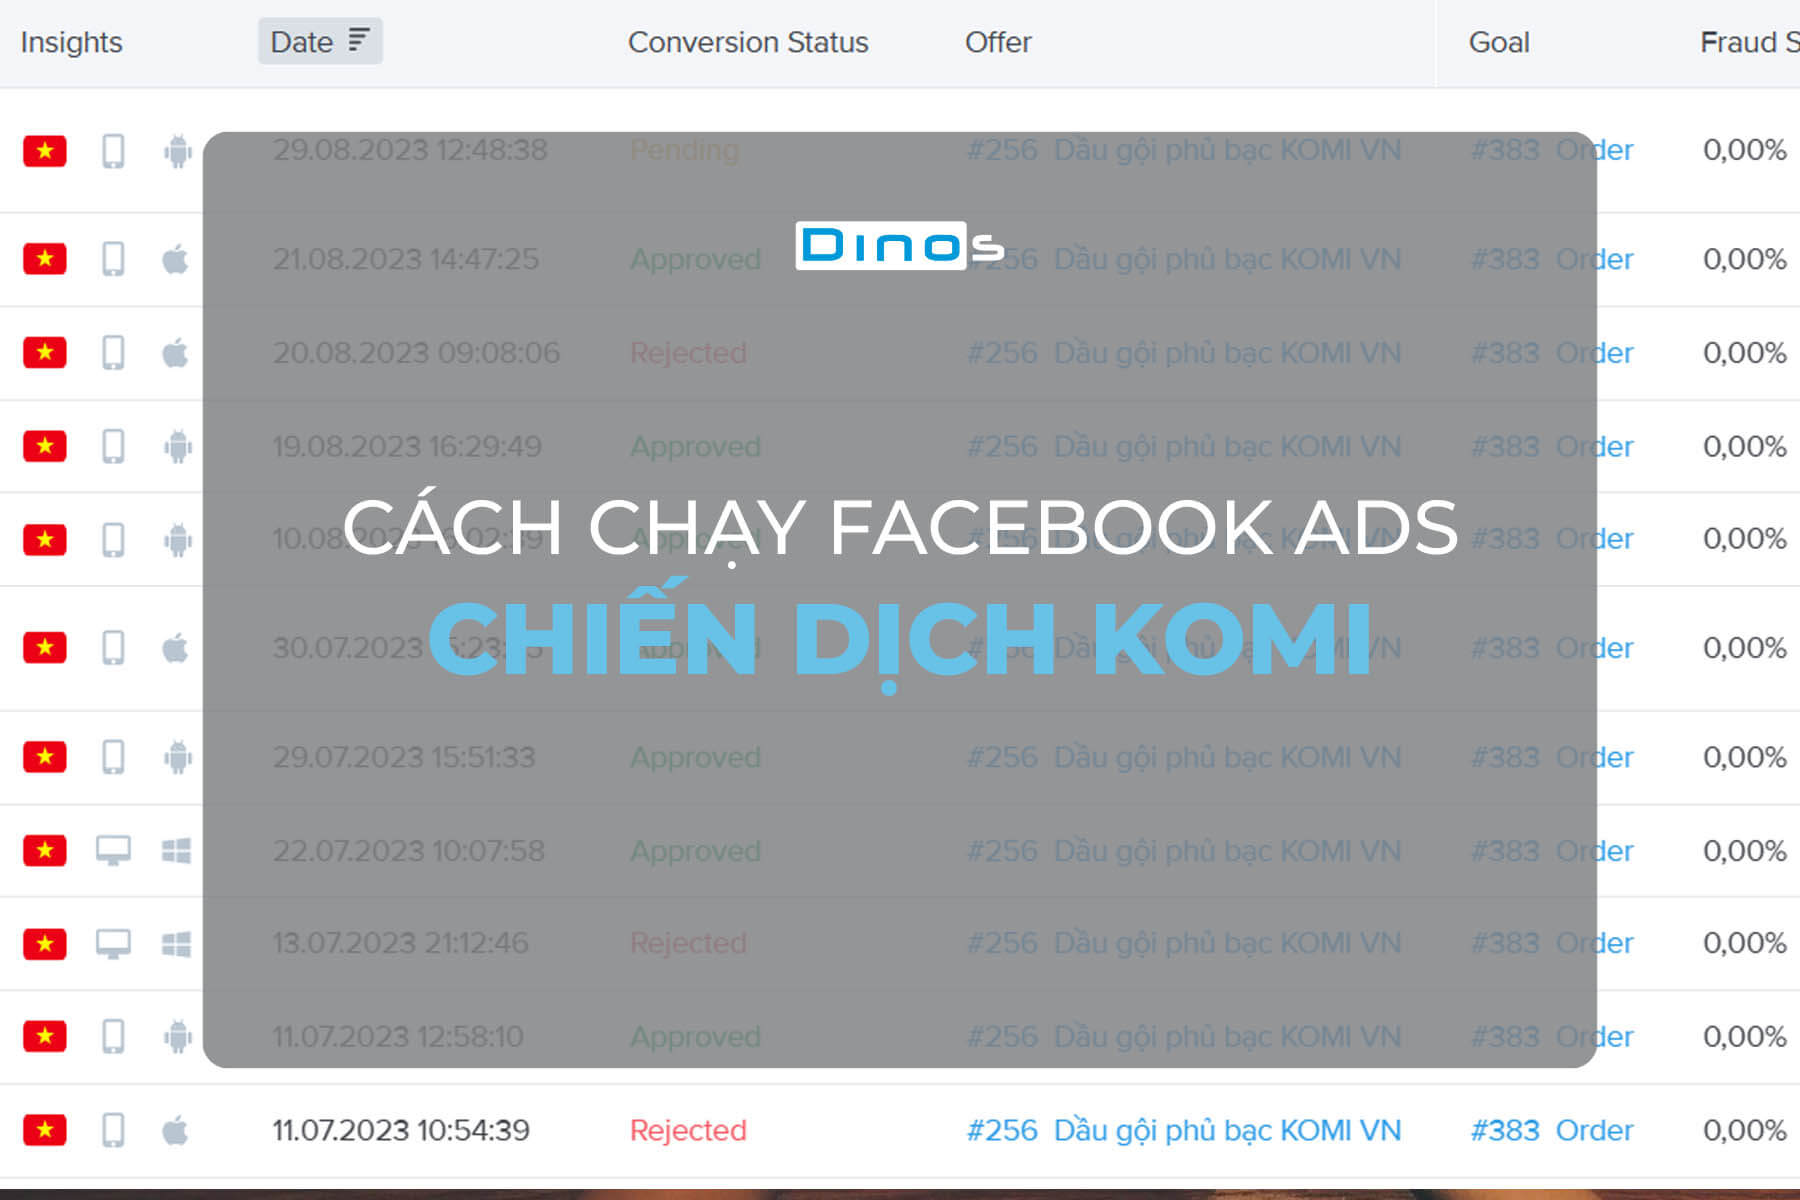 Cách chạy quảng cáo Facebook chiến dịch Komi